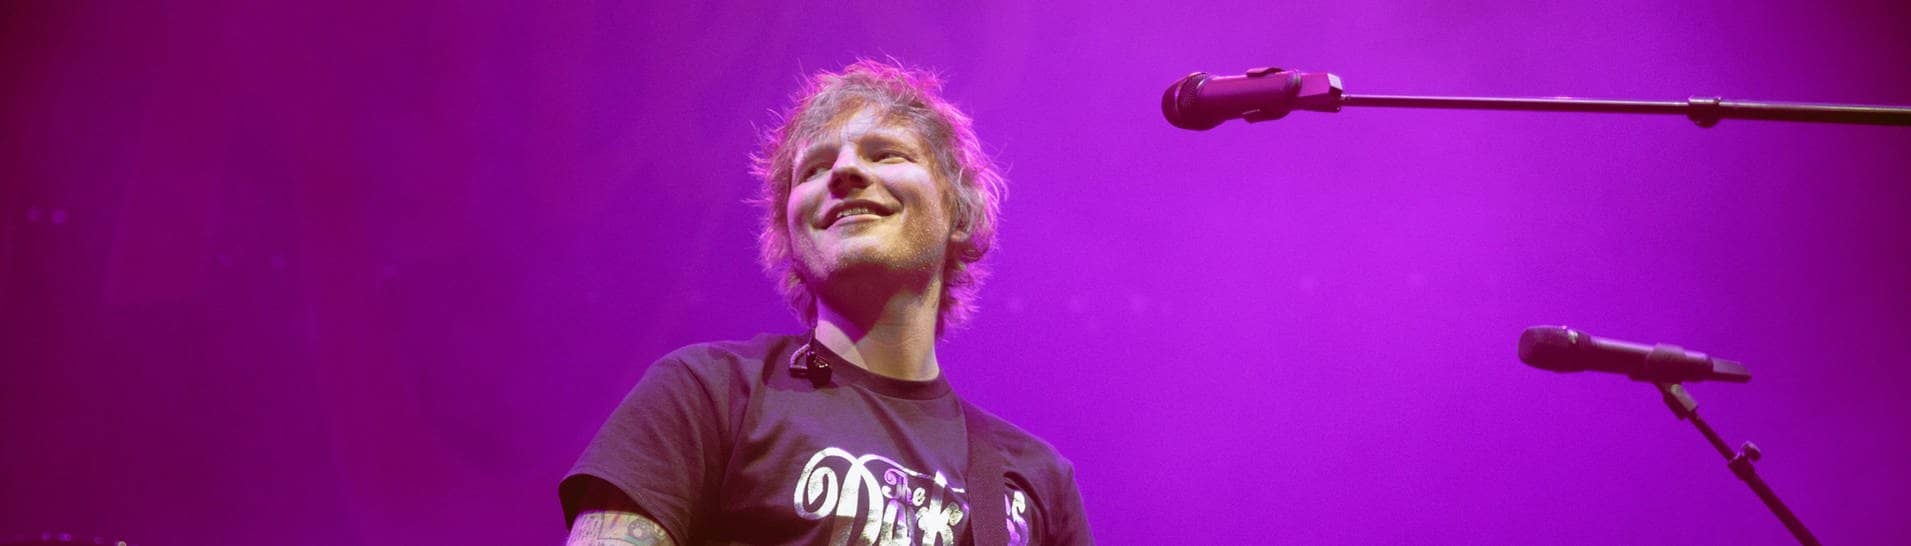 Sänger Ed Sheeran spielt während eines Konzerts Gitarre